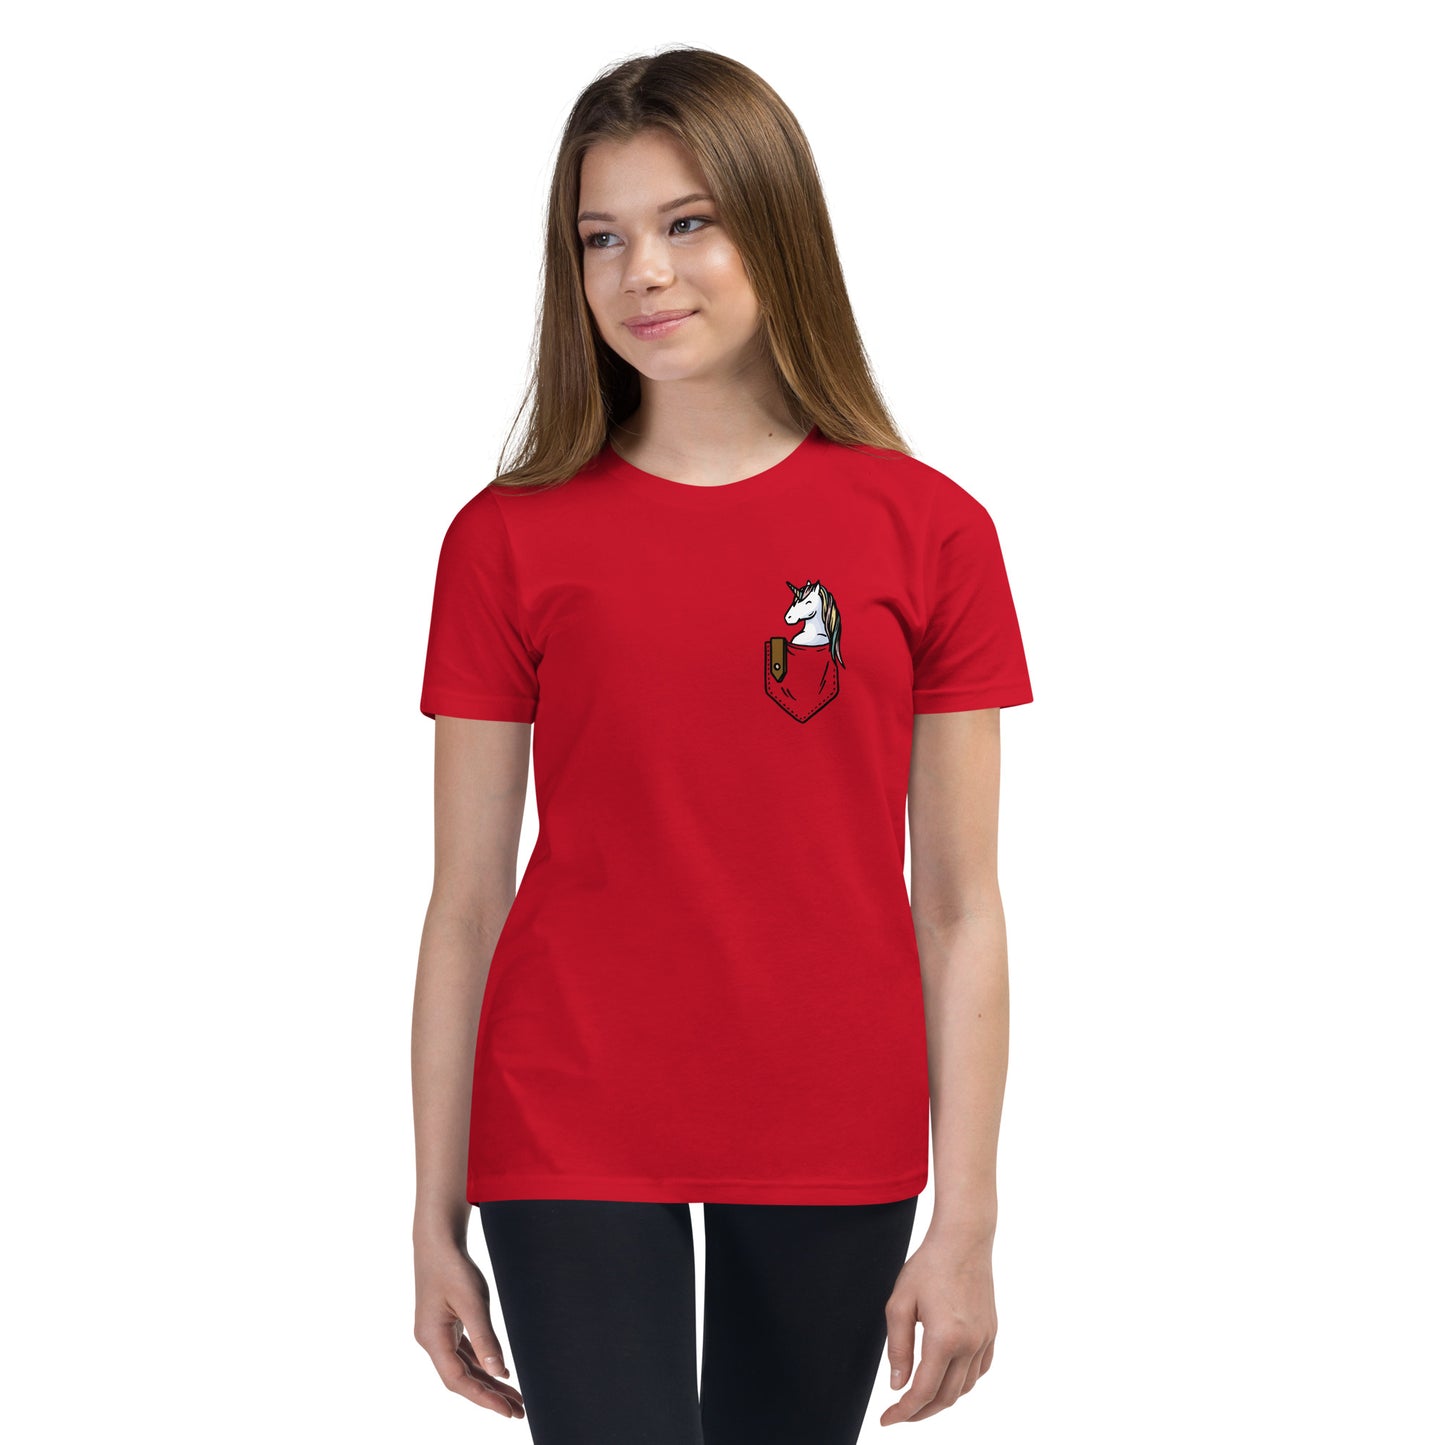 Pocket Unicorn Youth Short Sleeve T-Shirt